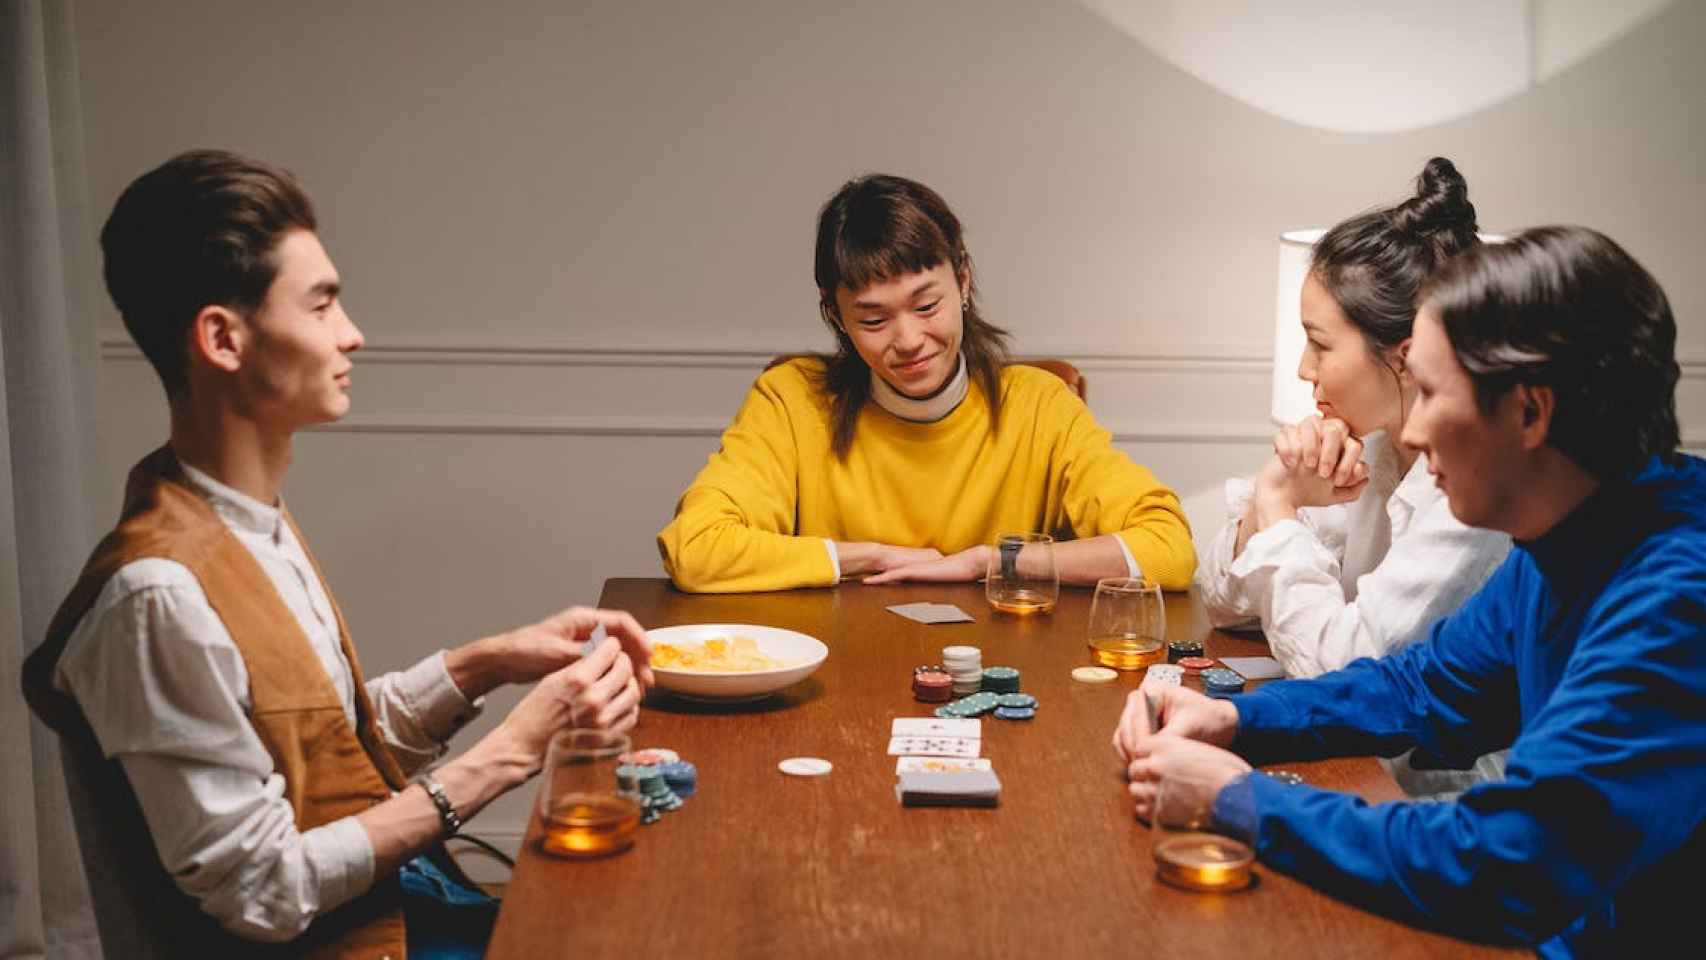 Jugar póker con amigos